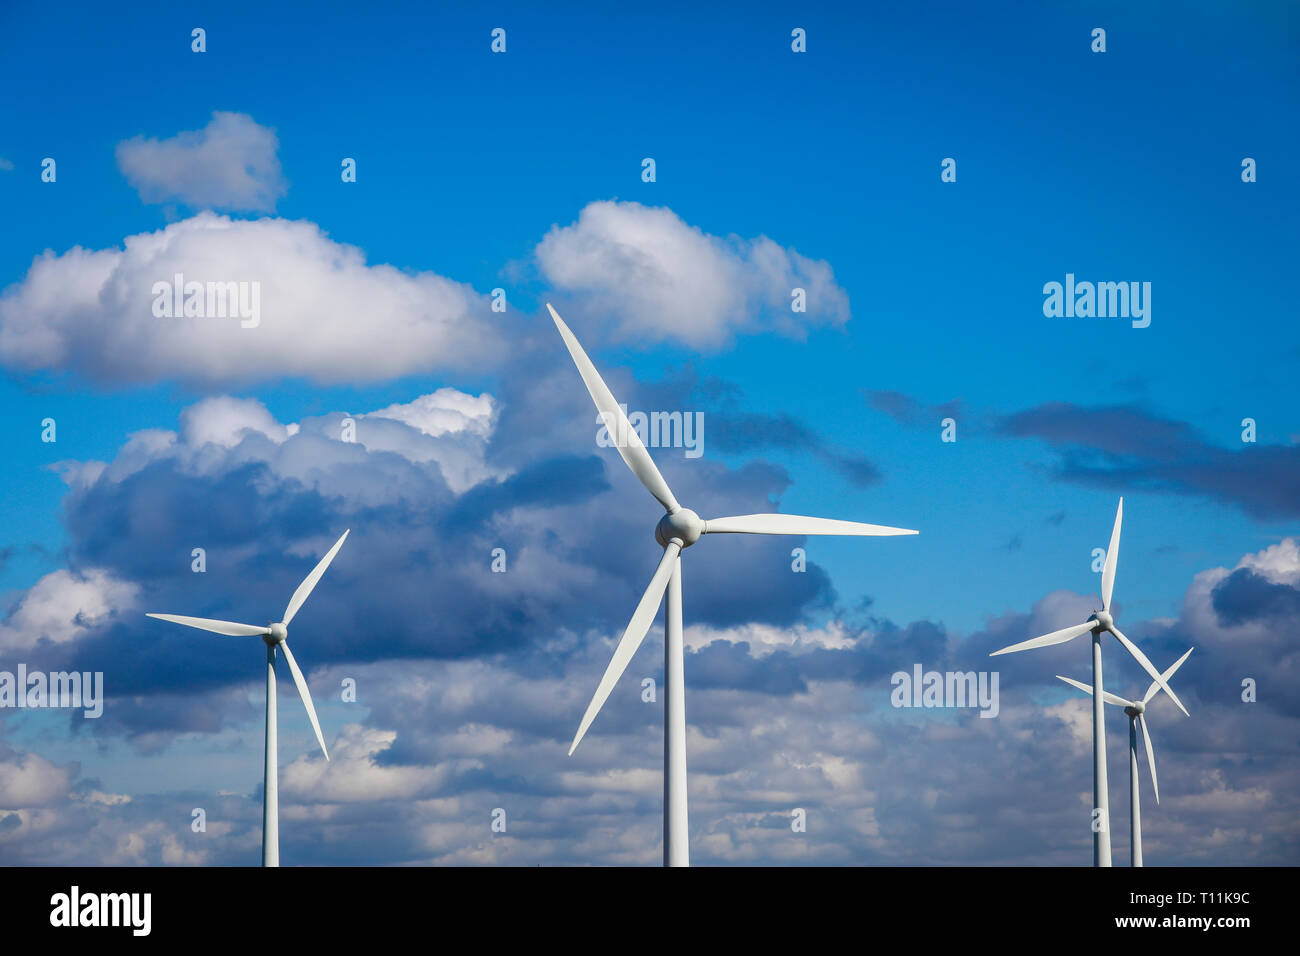 Ense, North Rhine-Westphalia, Germany - Windmills against a blue sky with clouds. Ense, Nordrhein-Westfalen, Deutschland - Windraeder vor blauem Himme Stock Photo